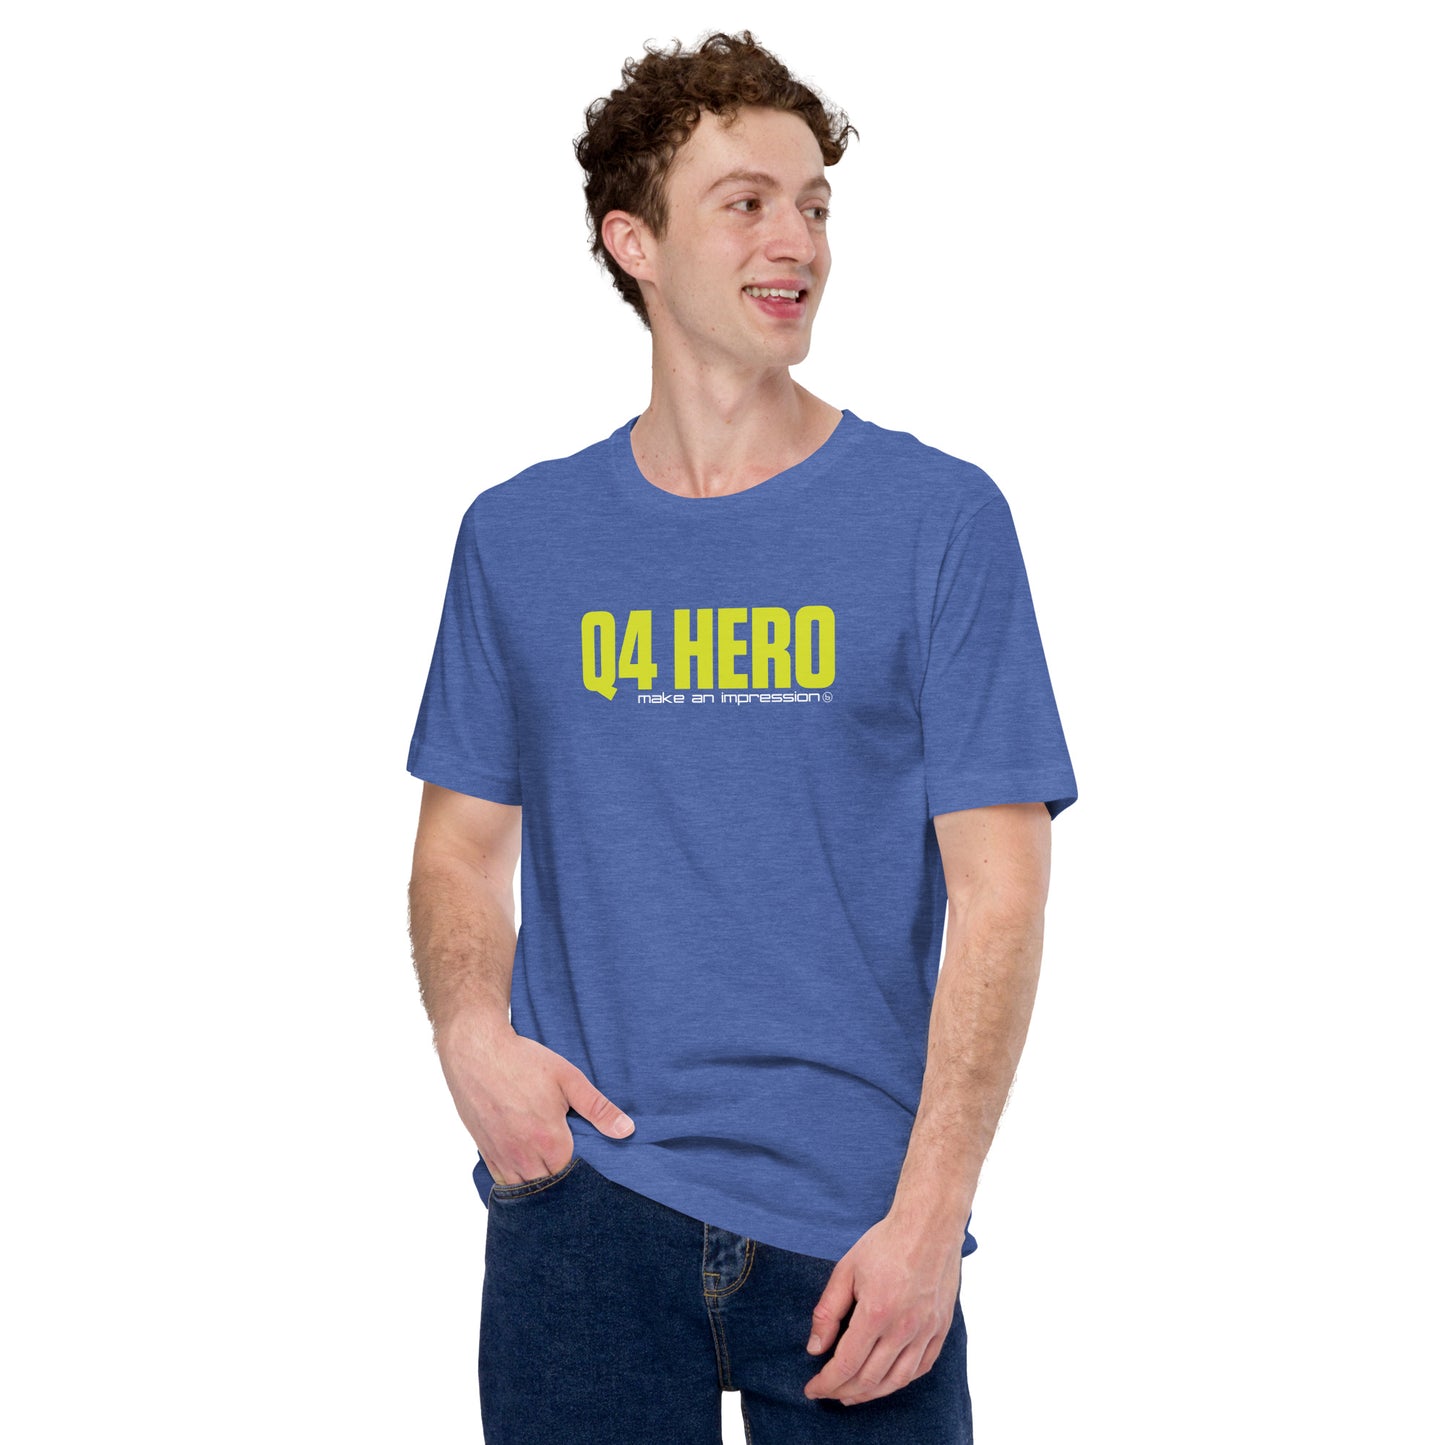 Q4 HERO T-Shirt - Unisex - Safety Yellow